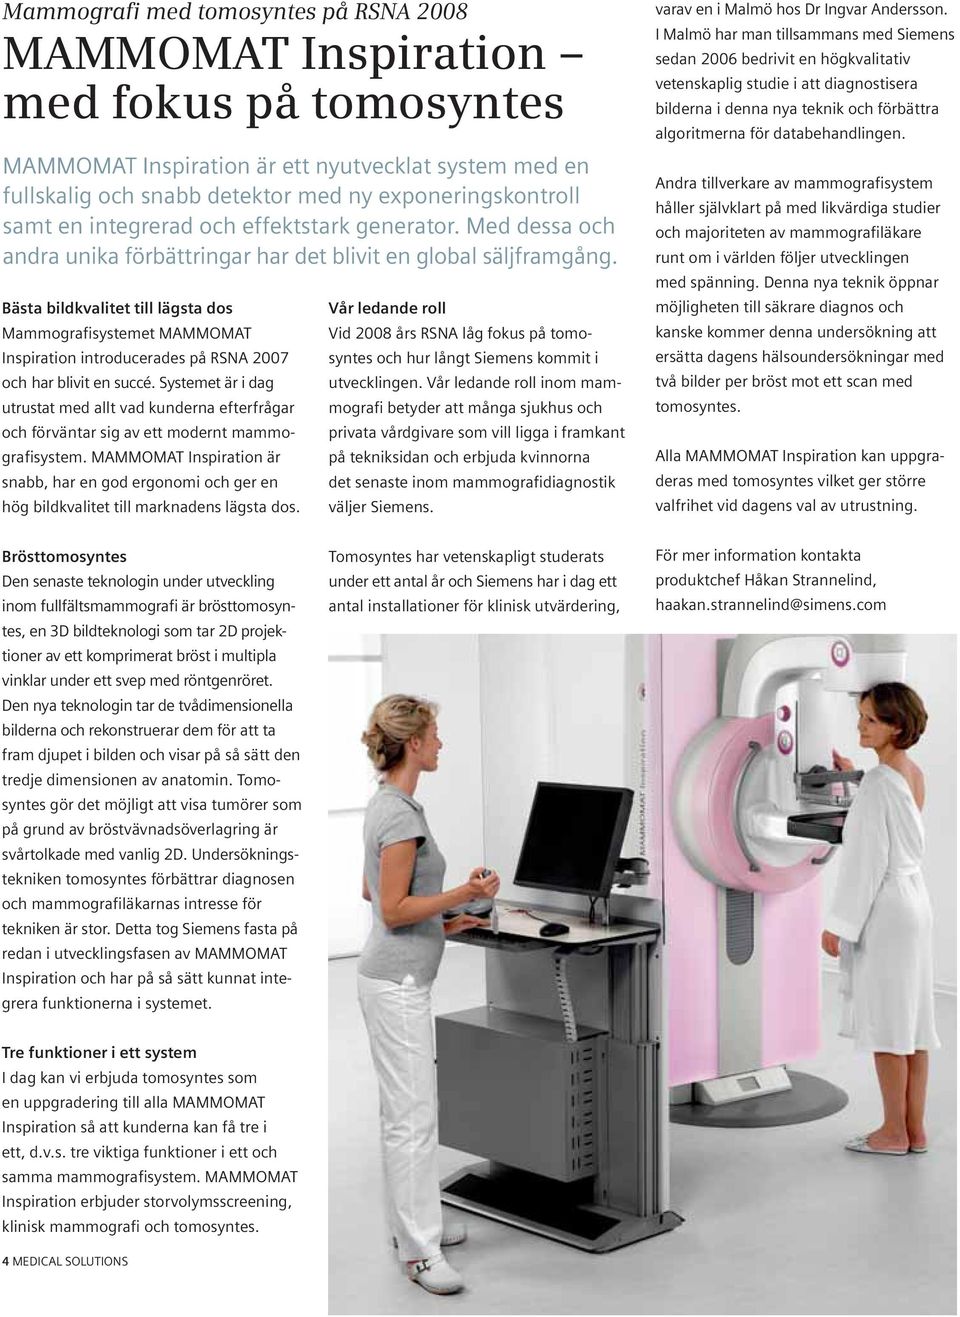 Bästa bildkvalitet till lägsta dos Mammografisystemet MAMMOMAT Inspiration introducerades på RSNA 2007 och har blivit en succé.